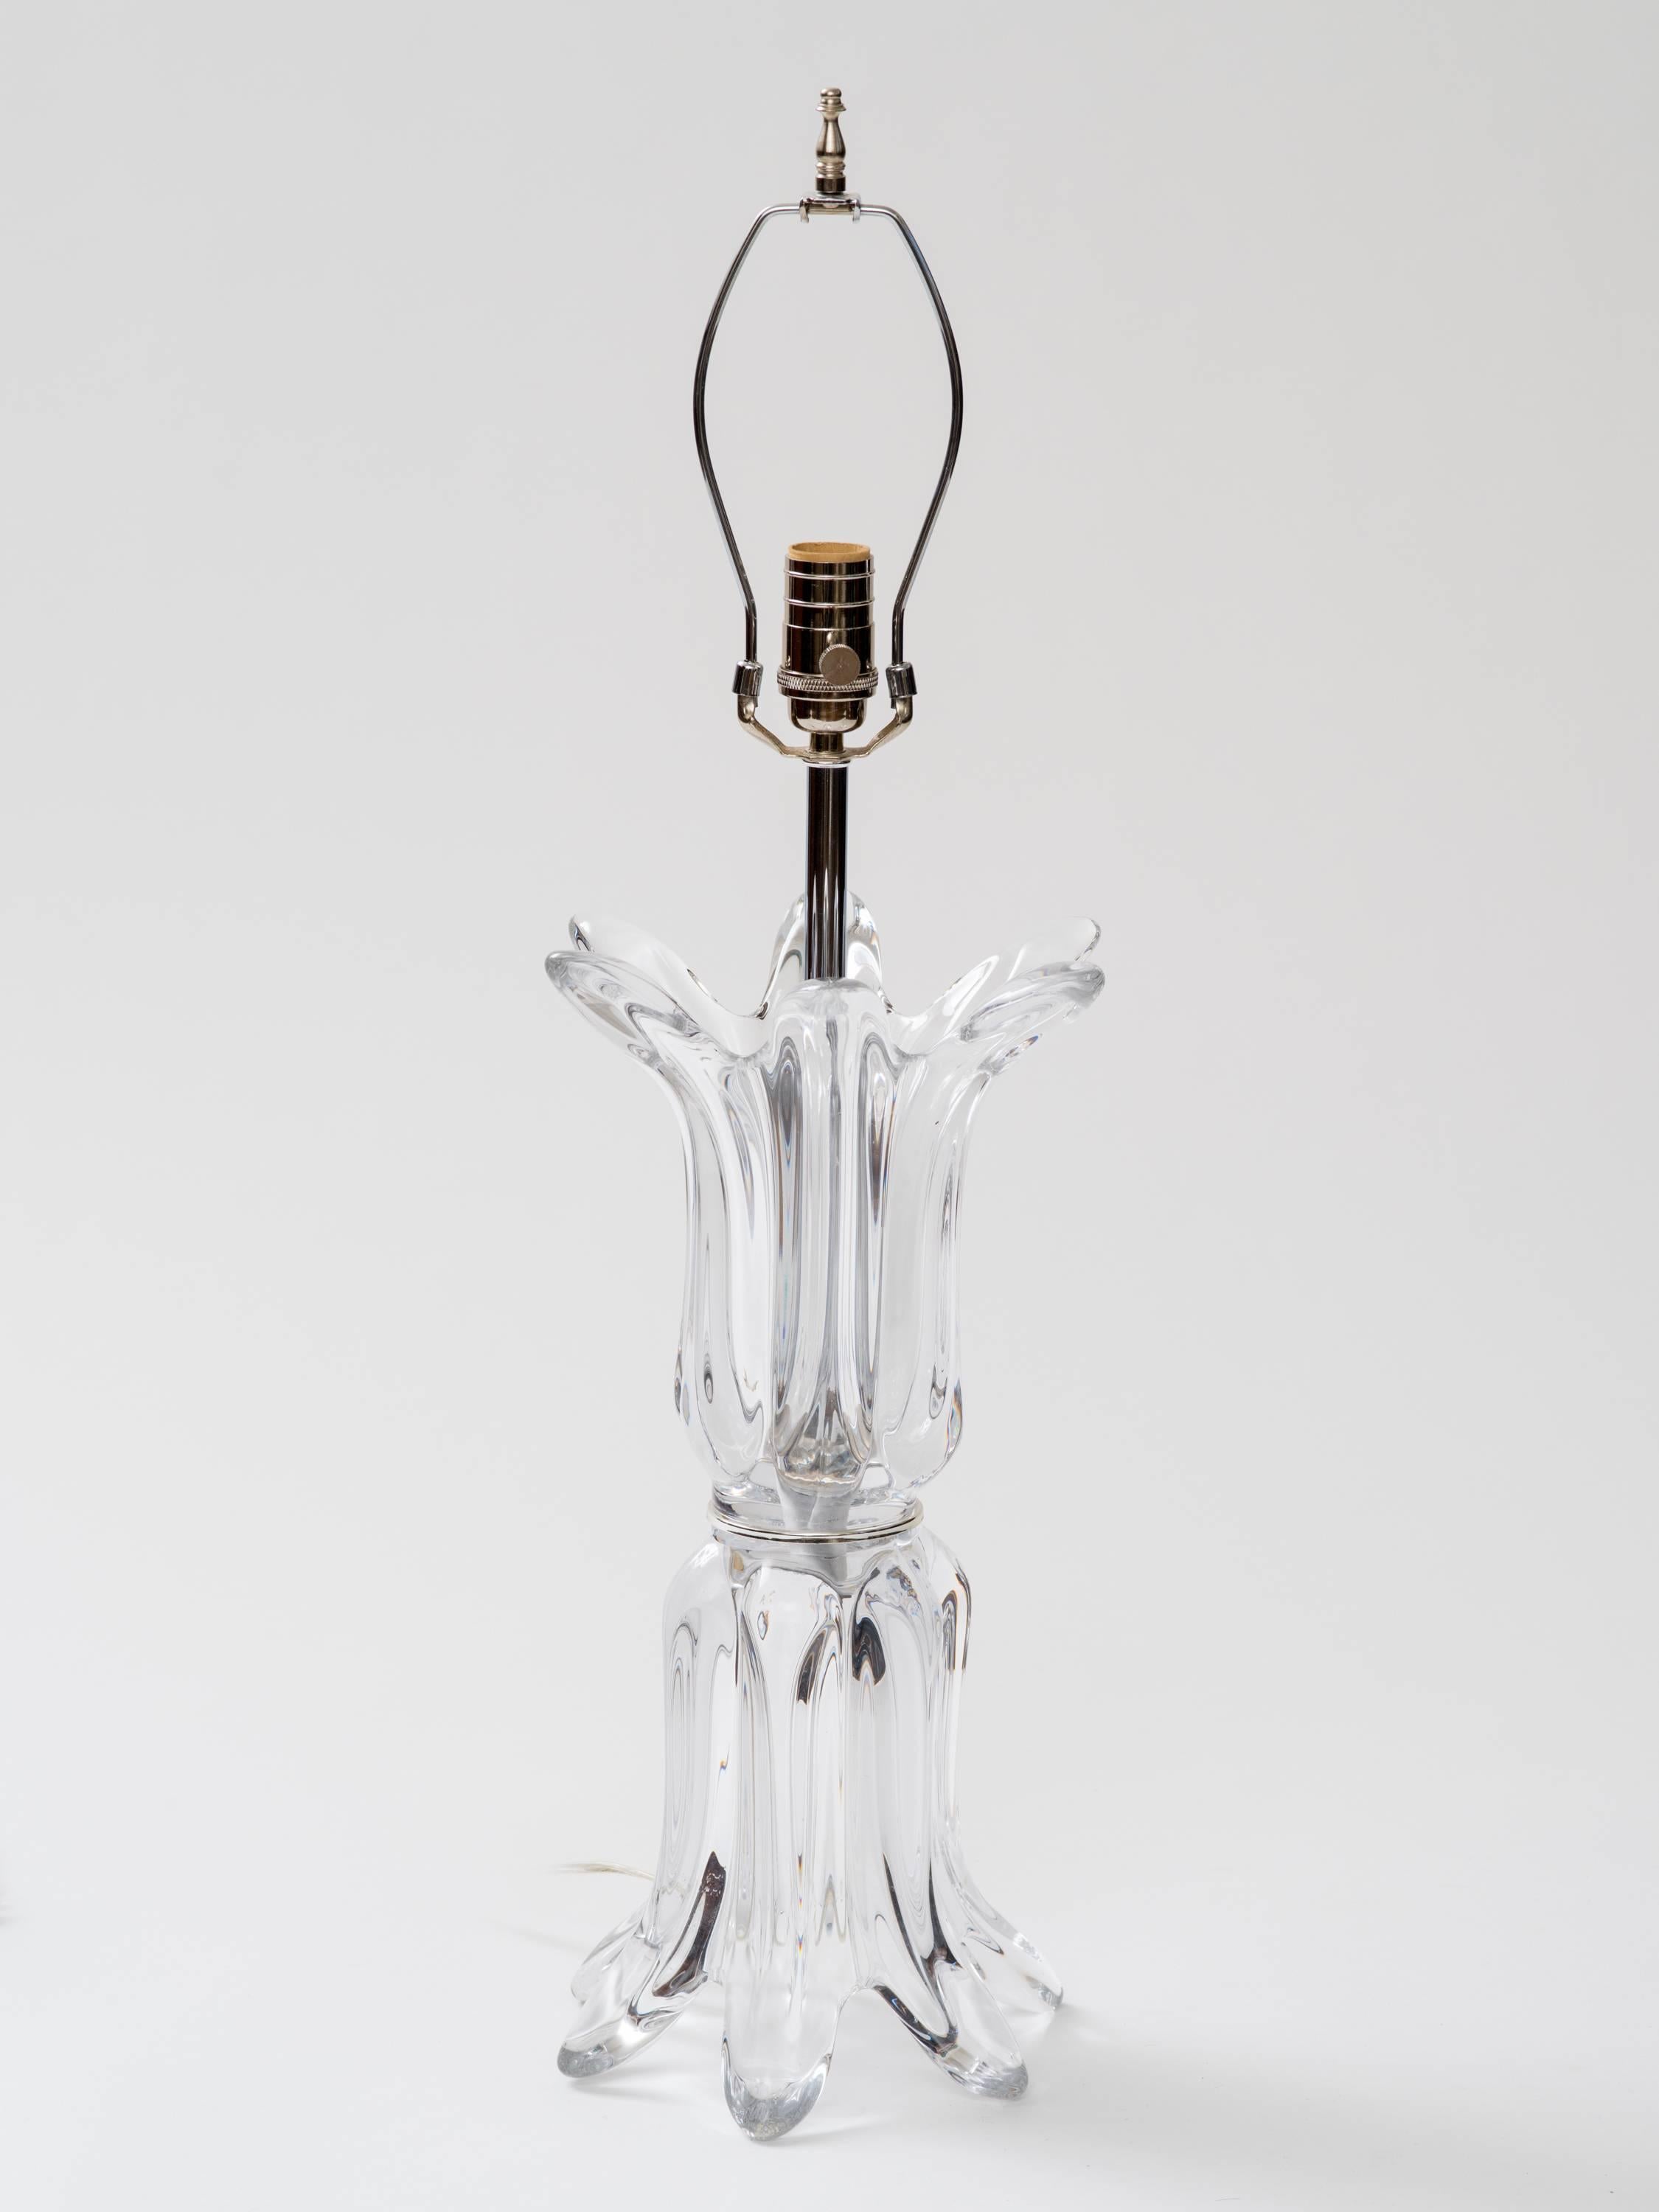 Lampe aus mundgeblasenem, klarem Muranoglas mit neu restaurierten, vernickelten Messingbeschlägen, Einzelsockel, max. 100 Watt, ca. 1970er Jahre, Italien.